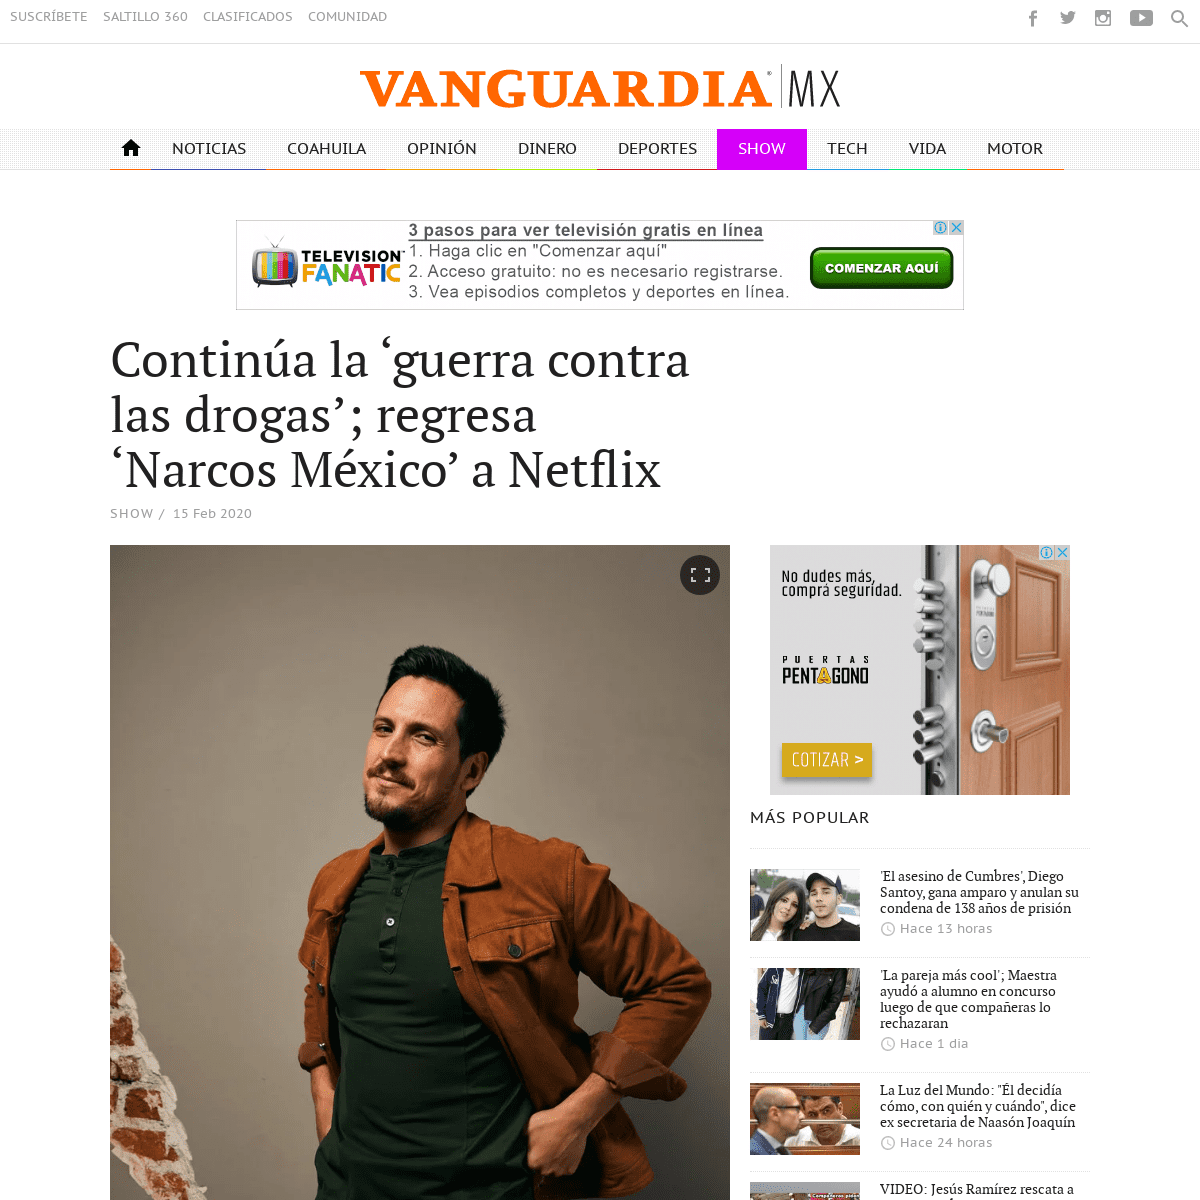 A complete backup of vanguardia.com.mx/articulo/continua-la-guerra-contra-las-drogas-regresa-narcos-mexico-netflix